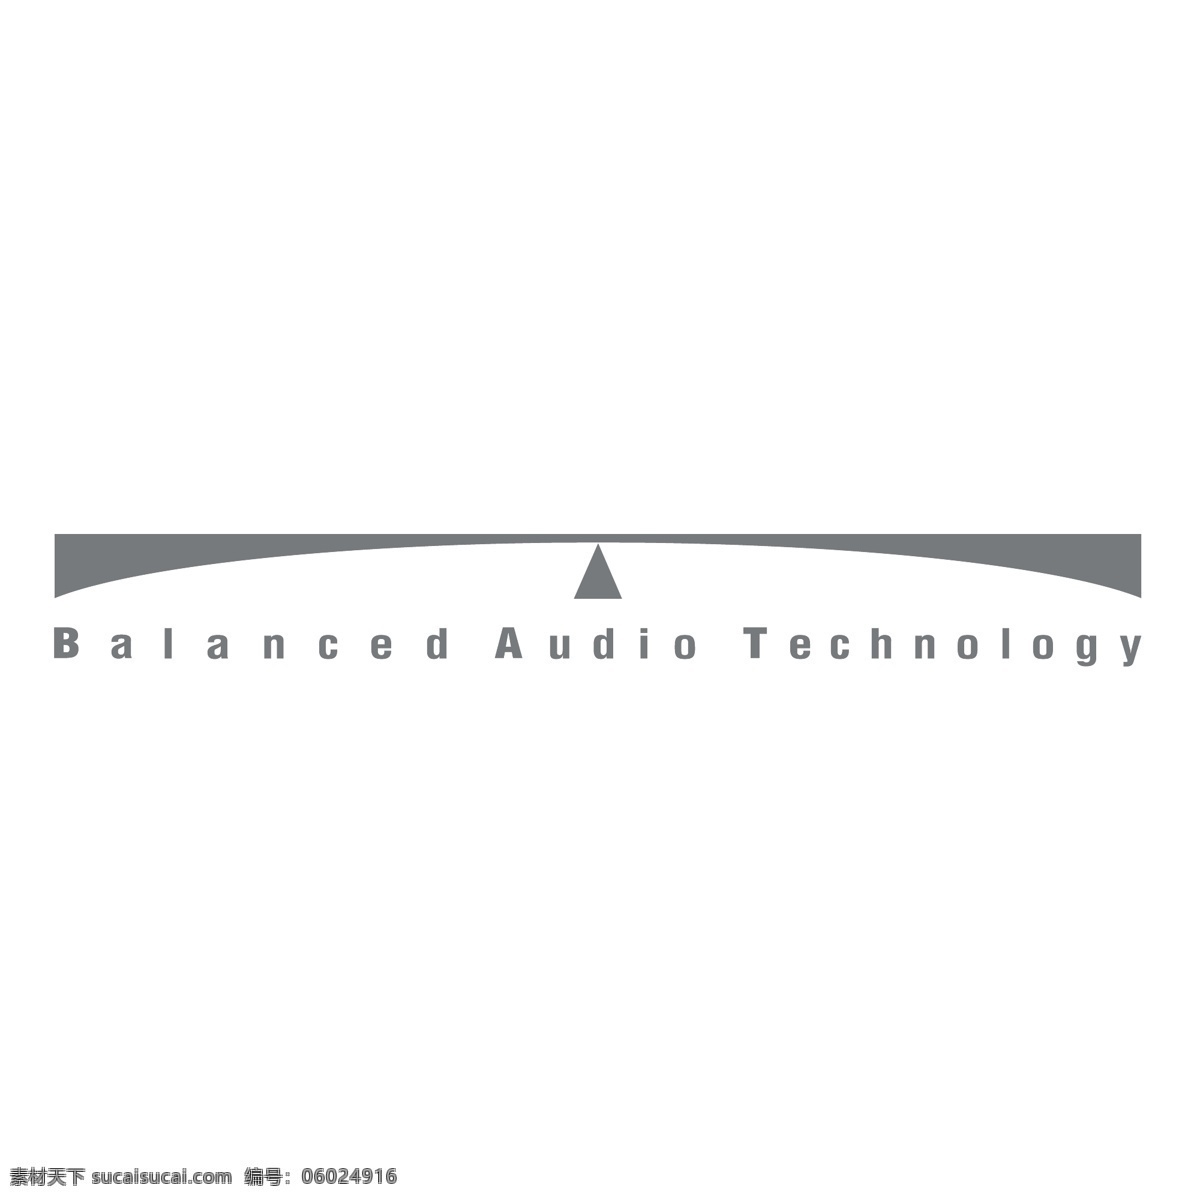 平衡 音频 技术 标识 公司 免费 品牌 品牌标识 商标 矢量标志下载 免费矢量标识 矢量 psd源文件 logo设计